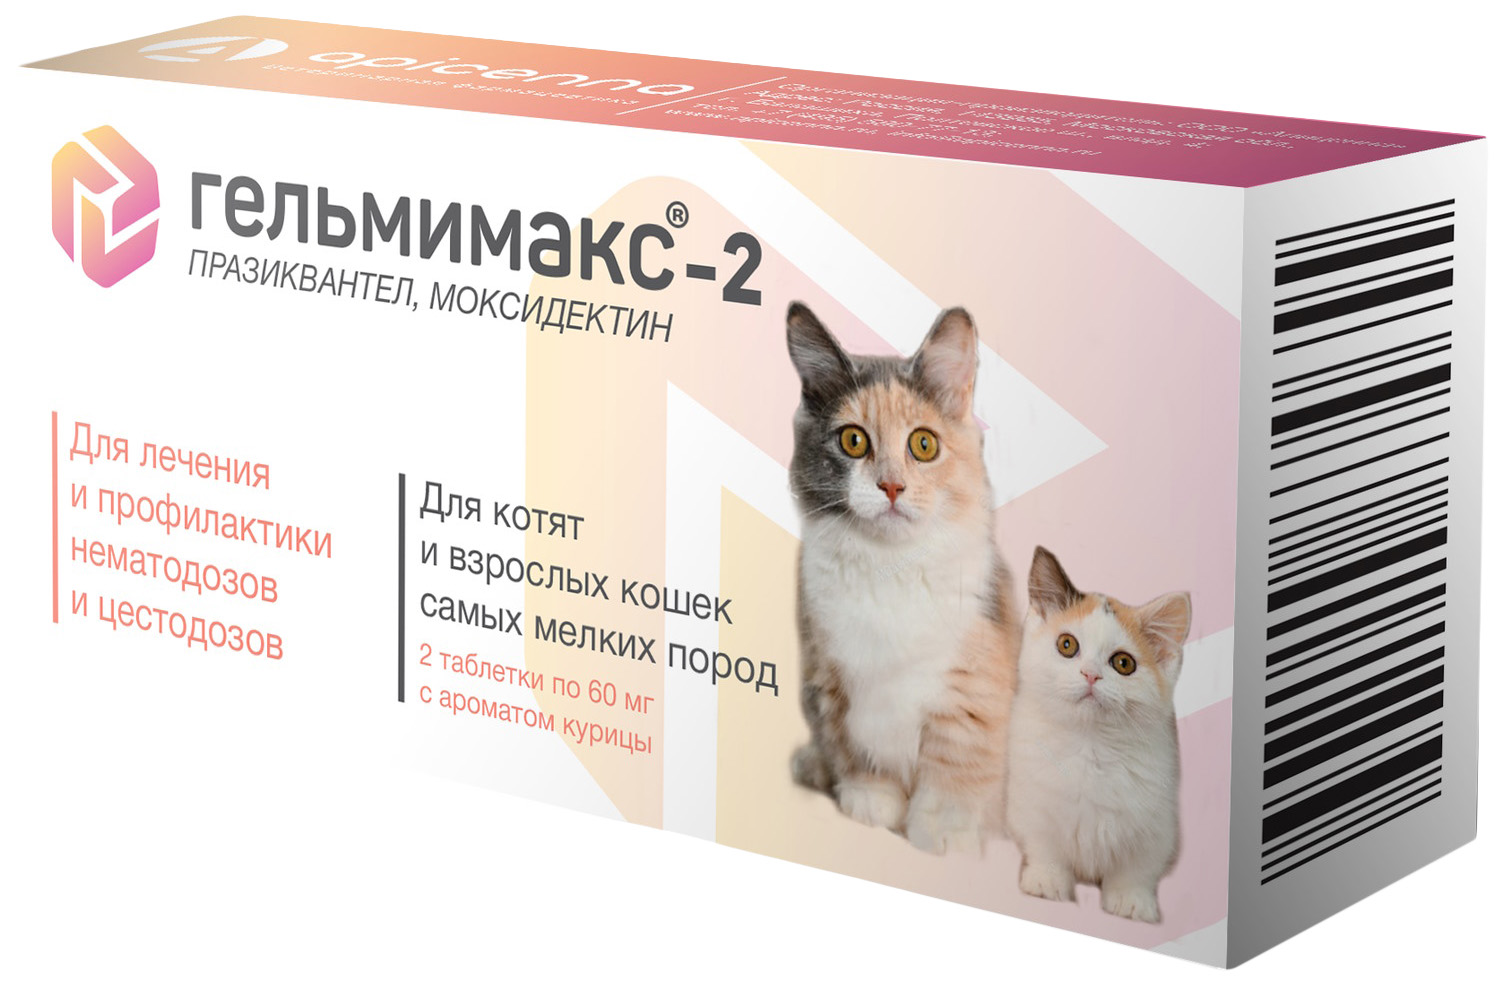 Гельмимакс-2 для котят и взрослых кошек самых мелких пород, 2 таб по 60 мг, Apicenna